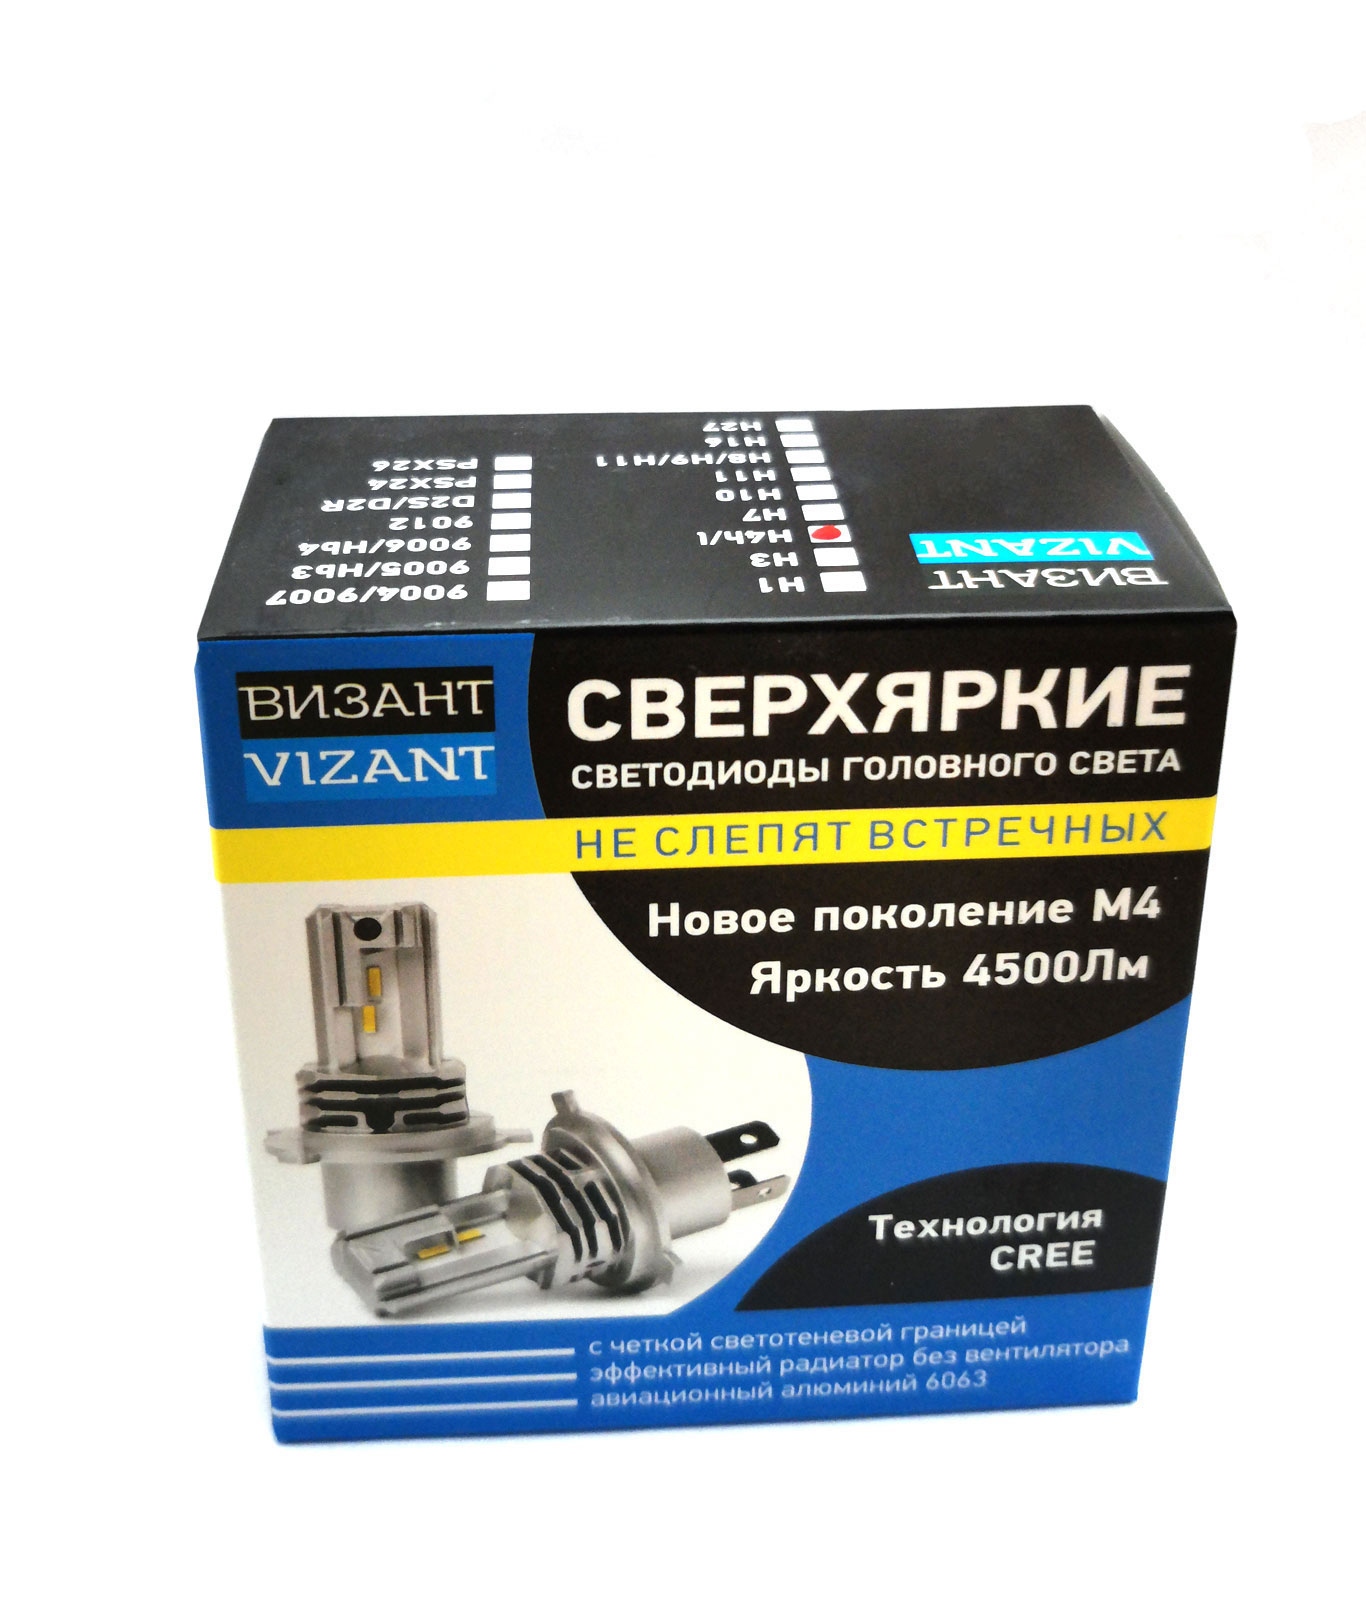 Светодиодные лампы Vizant M4 цоколь HB4 9006 с чипом CREE Tech 4500lm 5000k (2 шт.)